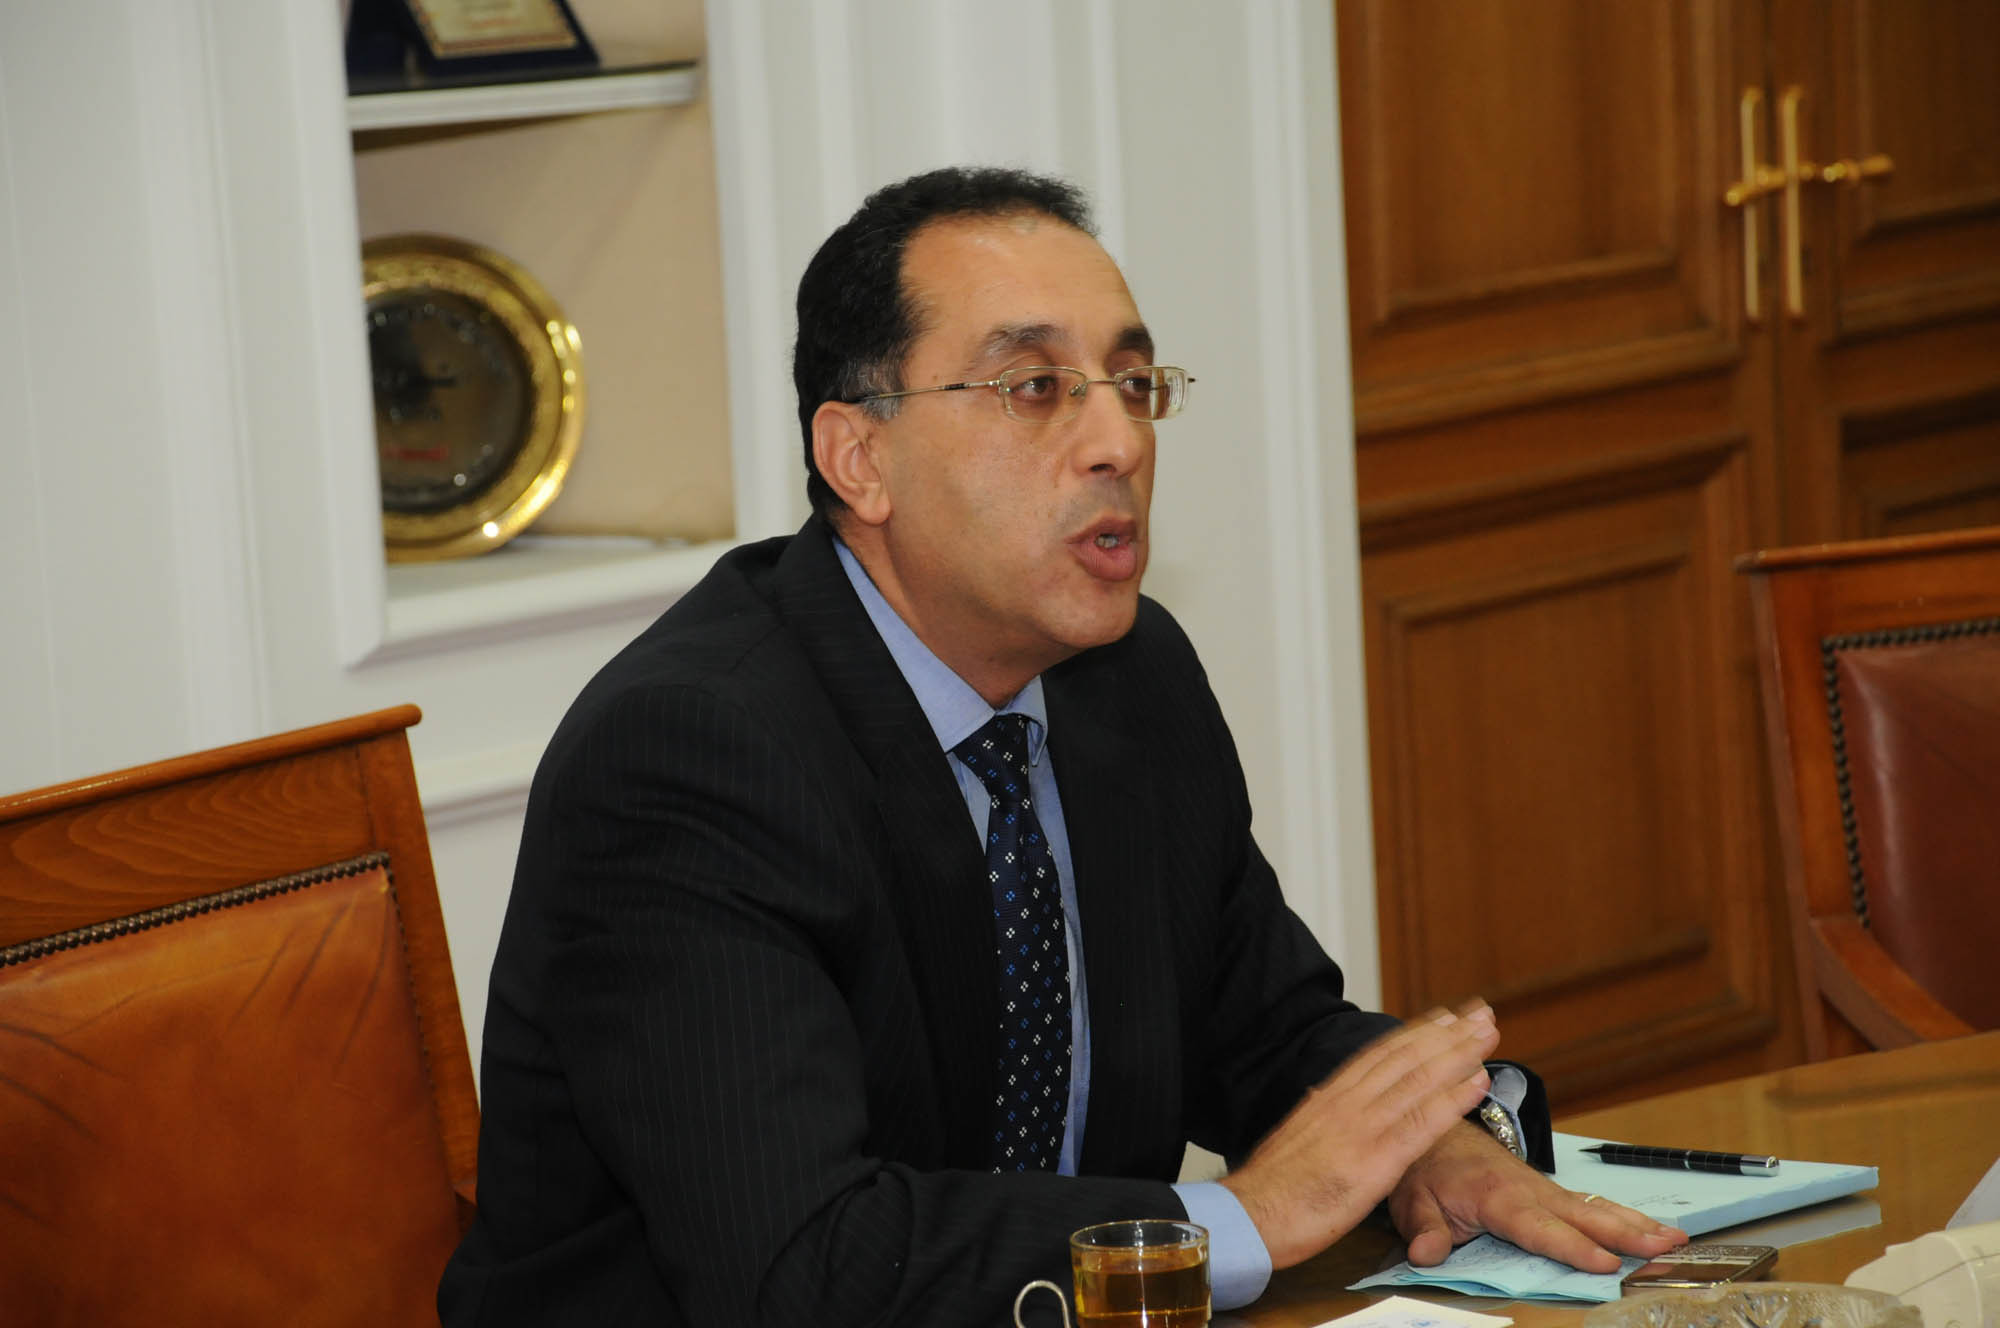   رئيس الوزراء حول حادثة ديرب نجم : لن نتستر على مسئول فاسد أو مهمل